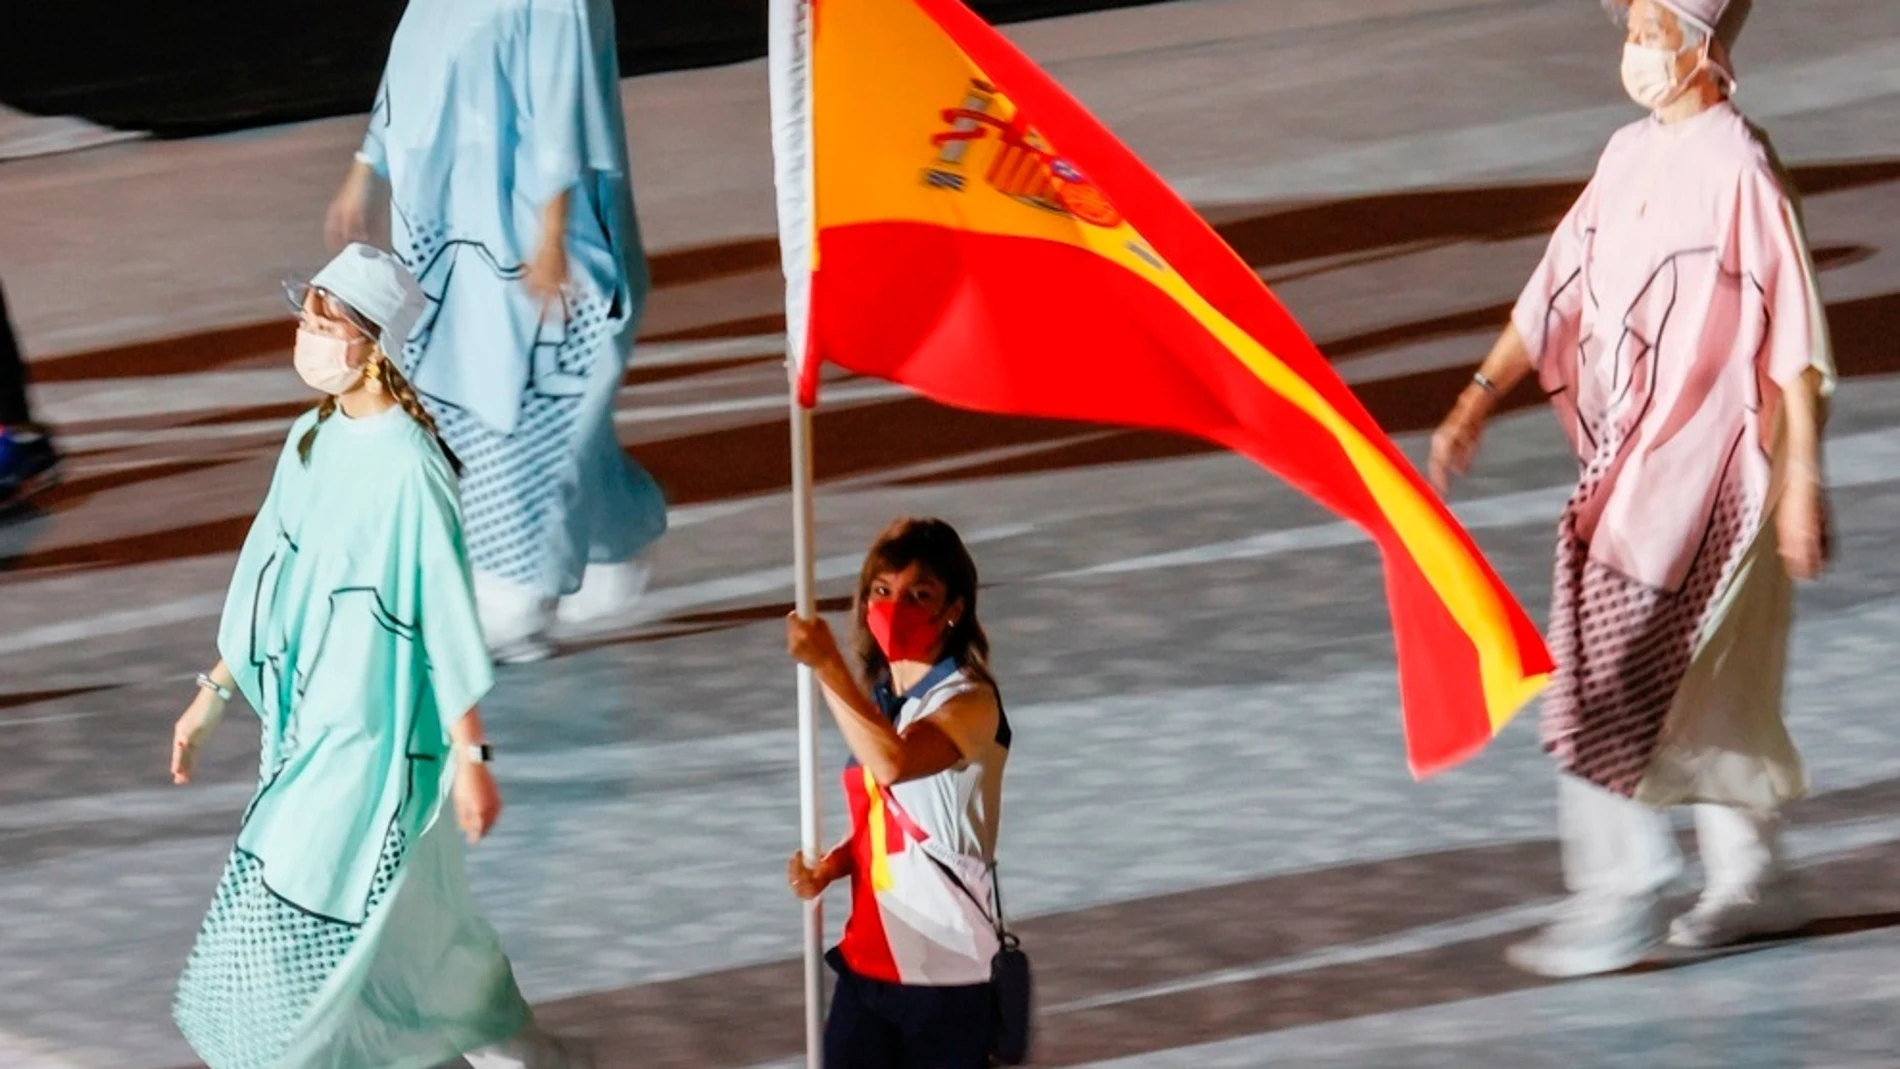 La abanderada española, la karateca Sandra Sánchez (c), ondea la bandera de España durante la ceremonia de clausura de los Juegos Olímpicos 2020, este domingo en el Estadio Nacional de Tokio (Japón). EFE/ Lavandeira Jr